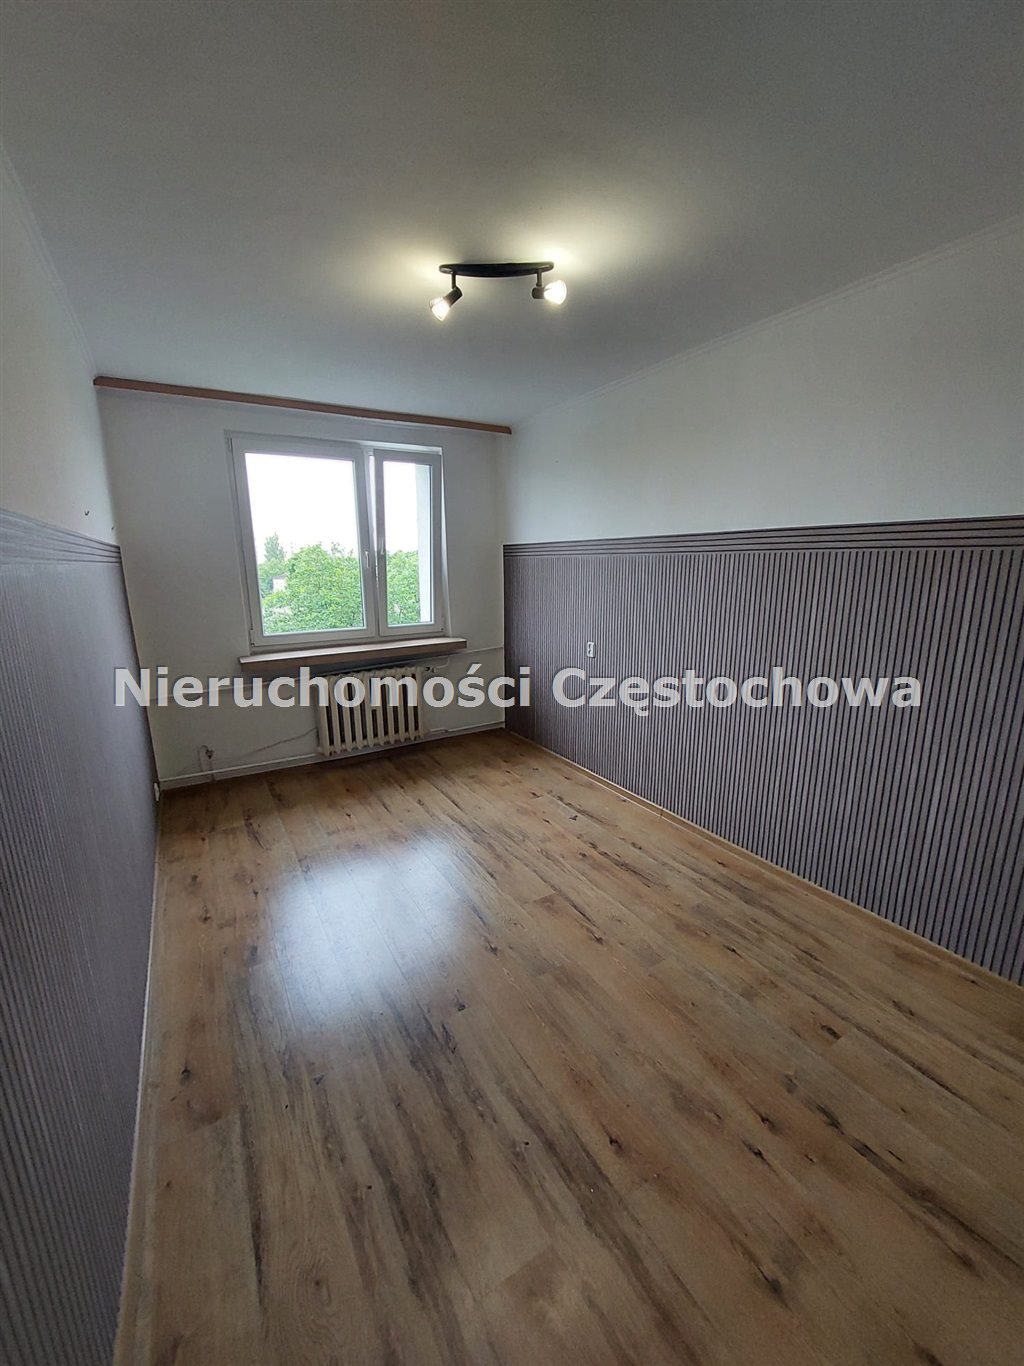 Mieszkanie dwupokojowe na sprzedaż Częstochowa, Centrum  37m2 Foto 5